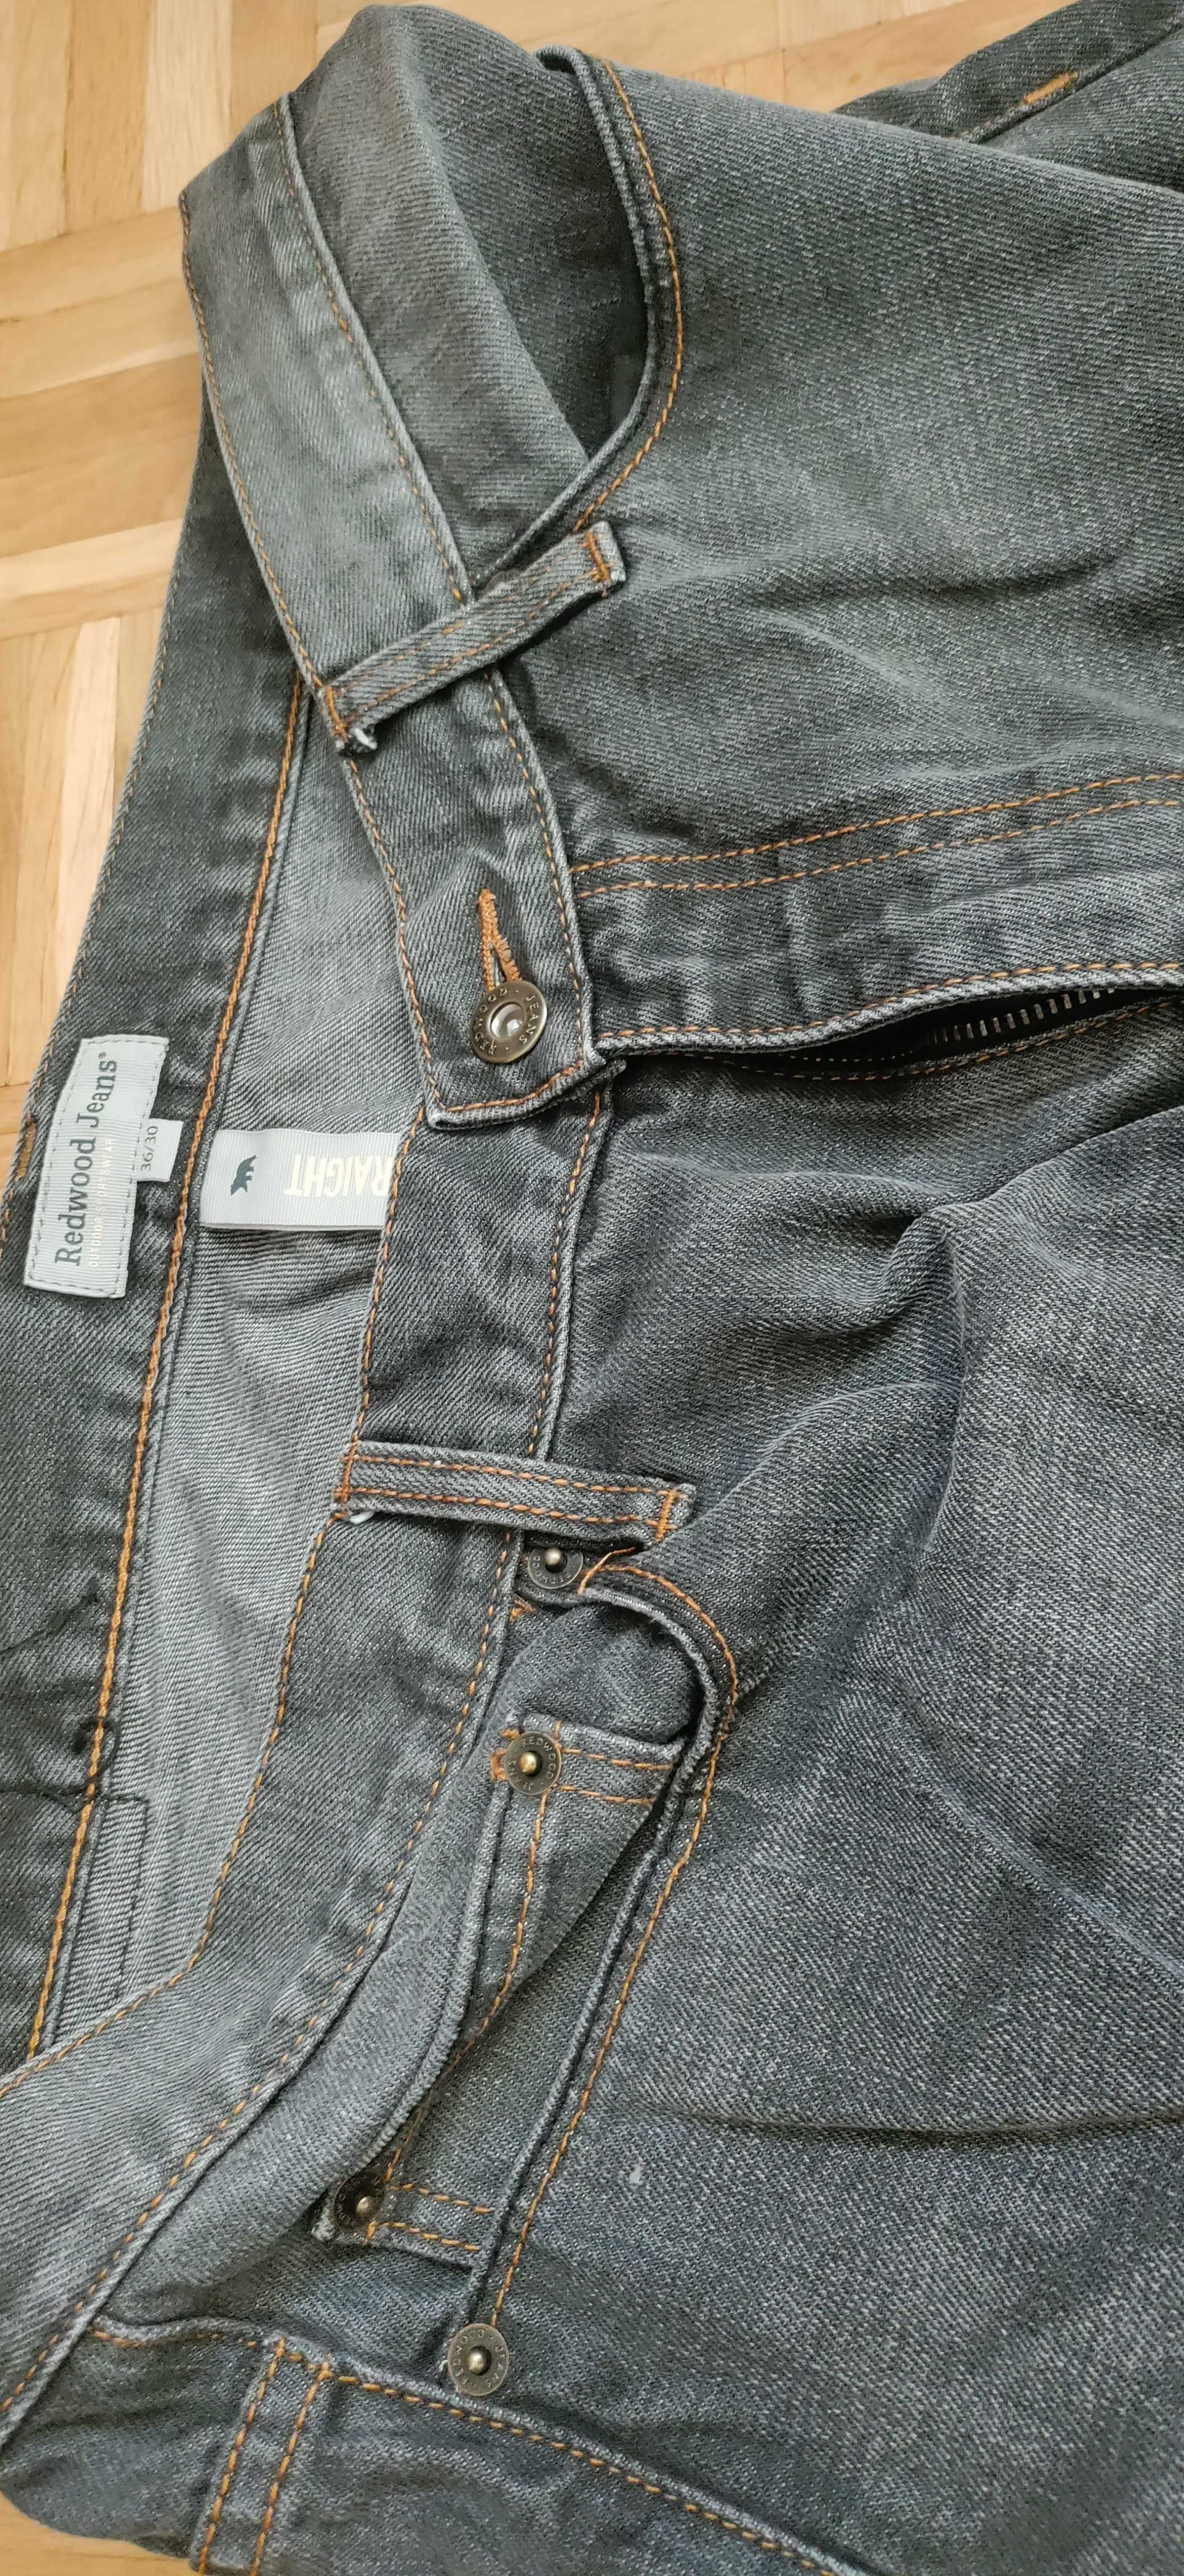 Spodnie jeansy dżinsy męskie 36/30 pas 95 cm straight fit